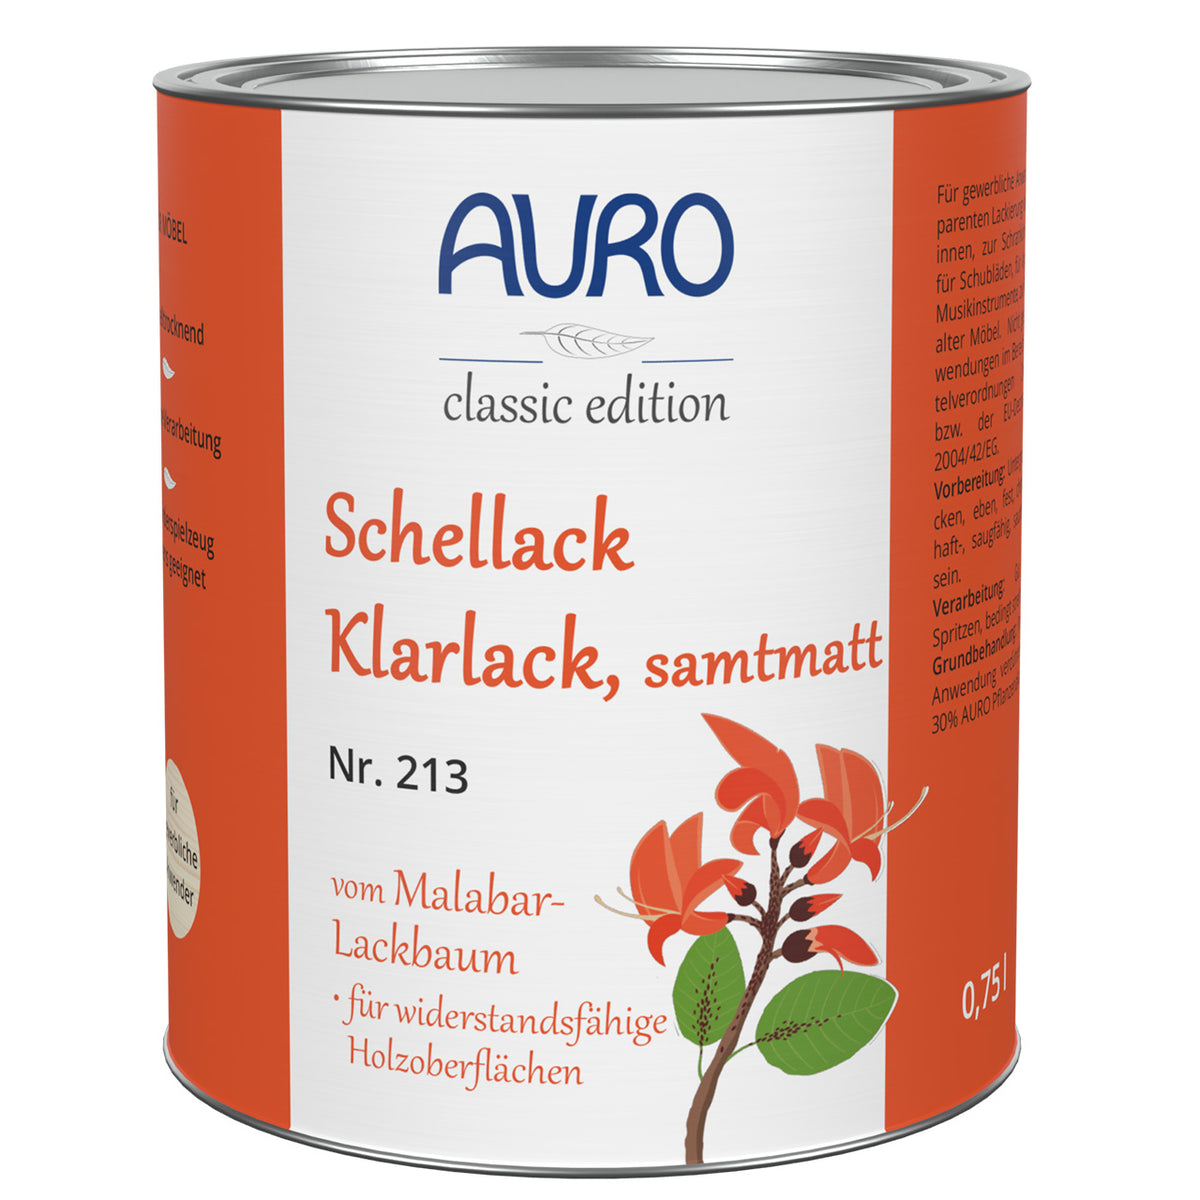 AURO Schellack-Klarlack, samtmatt Nr. 213